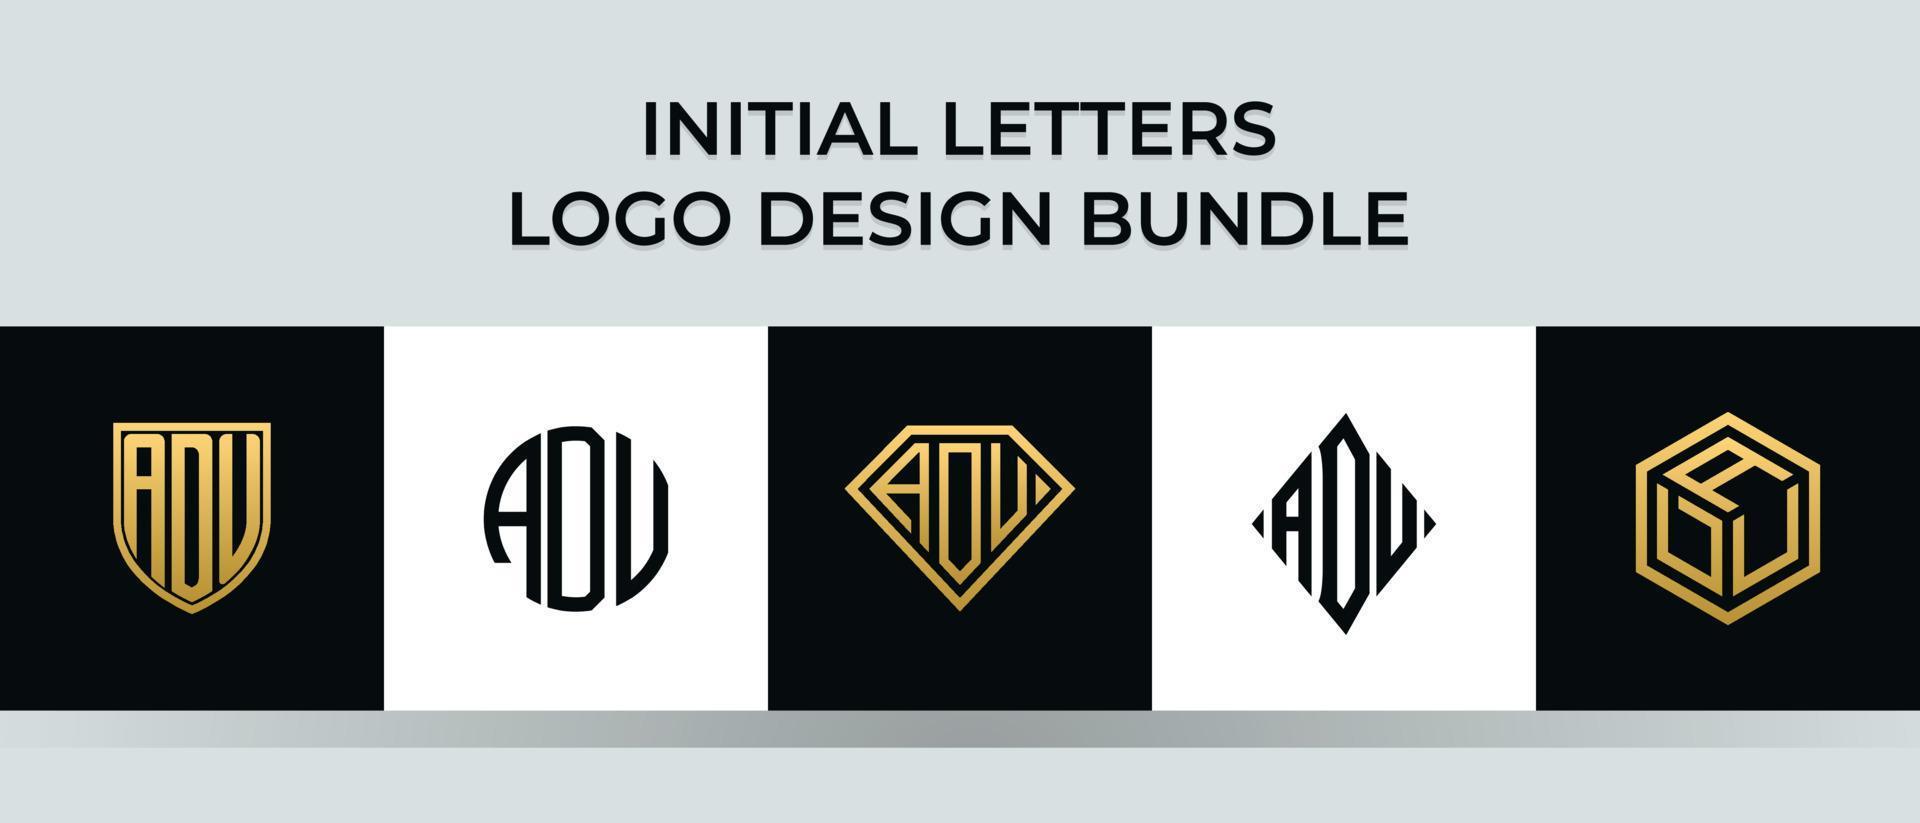 beginletters adu logo ontwerpen bundel vector